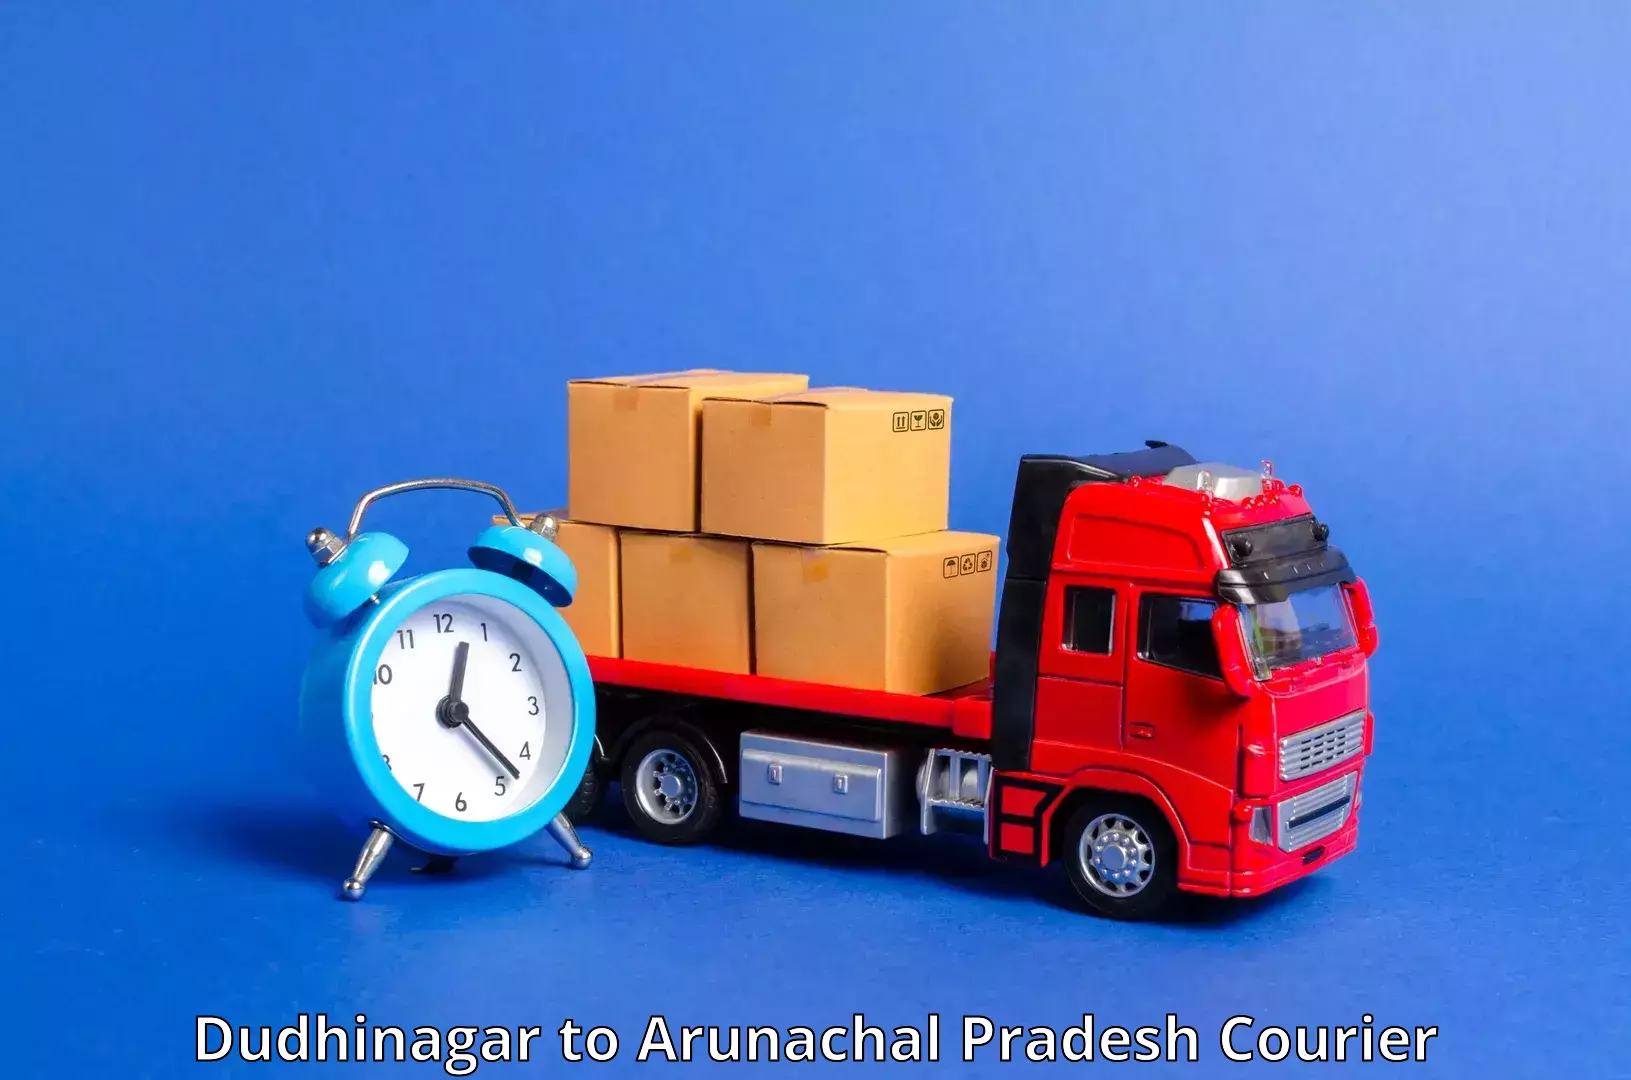 24/7 courier service Dudhinagar to Itanagar